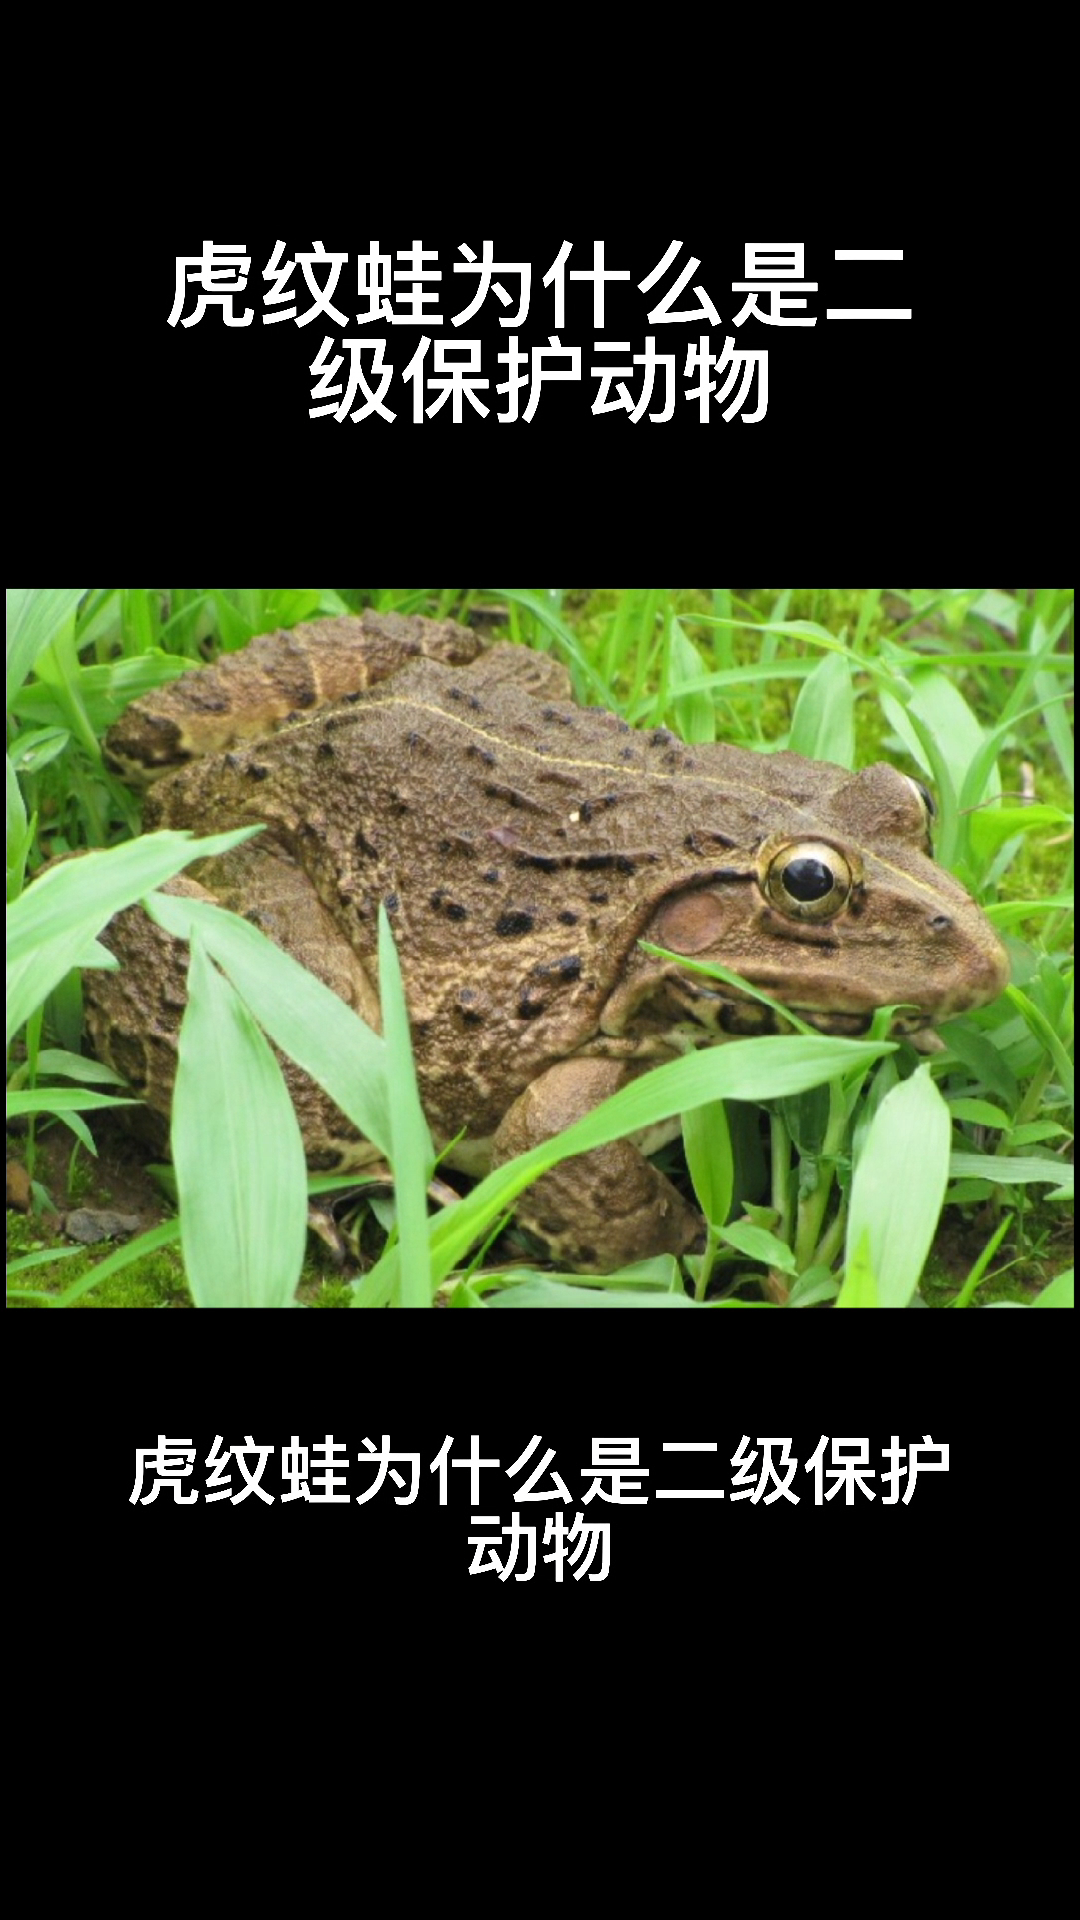 虎纹蛙为什么是二级保护动物